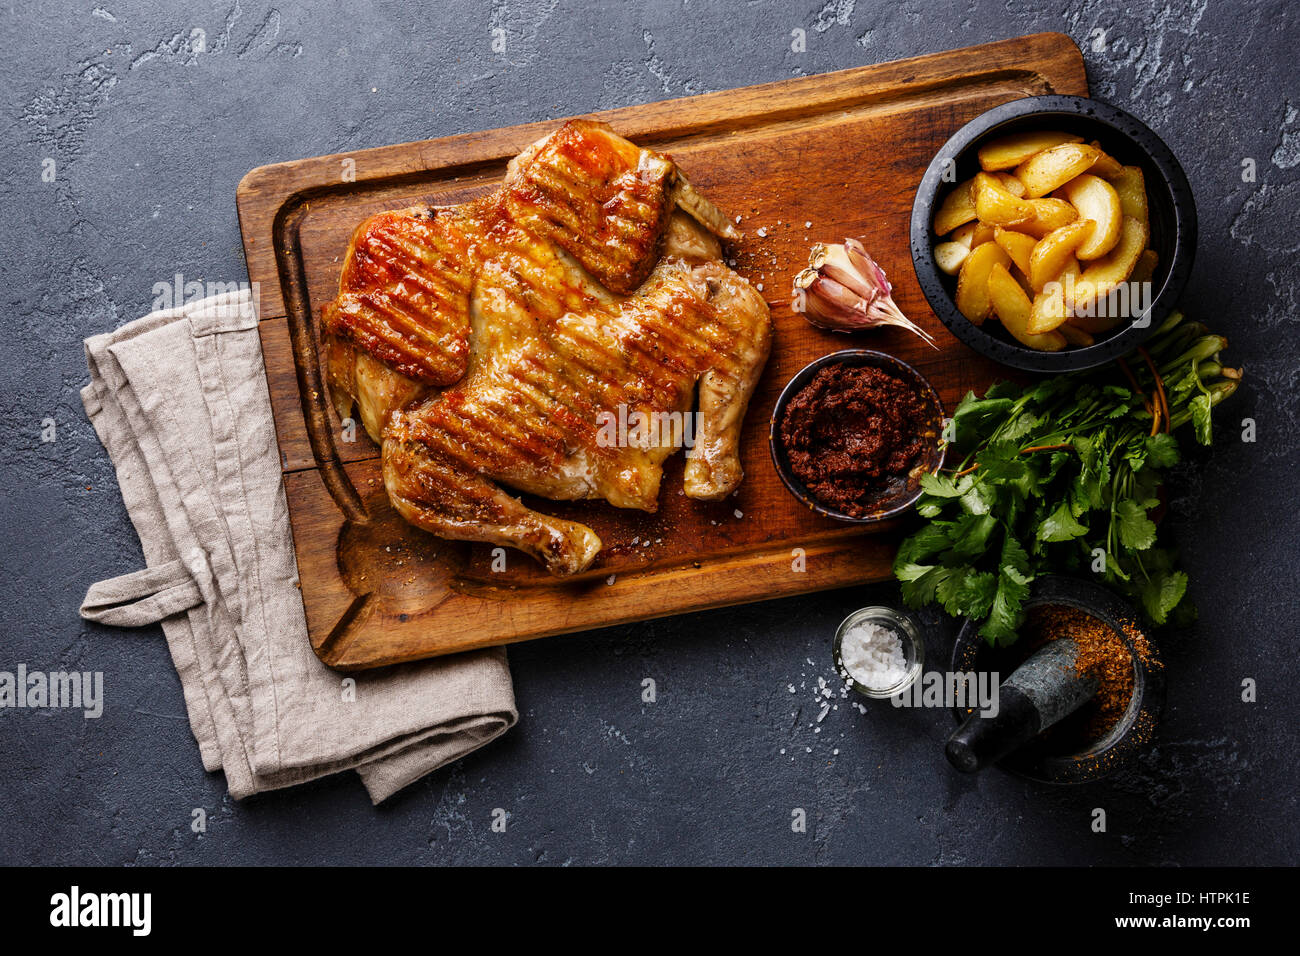 Tabaka frito a la parrilla de pollo asado y rodajas de patata en el fondo de la tabla de cortar de madera Foto de stock